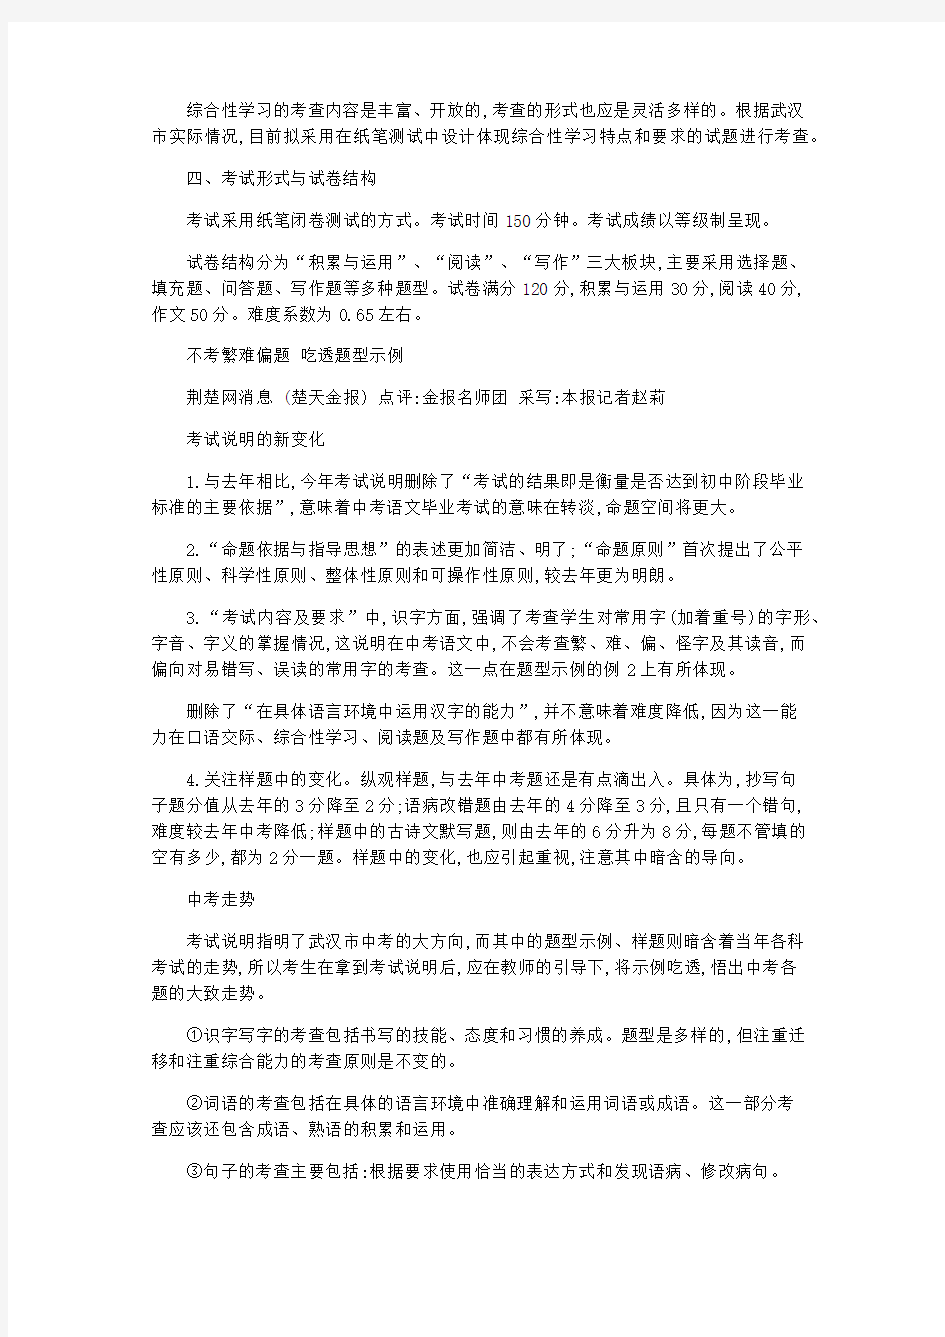 语文计划总结-2020年武汉中考语文的考试说明和复习建议